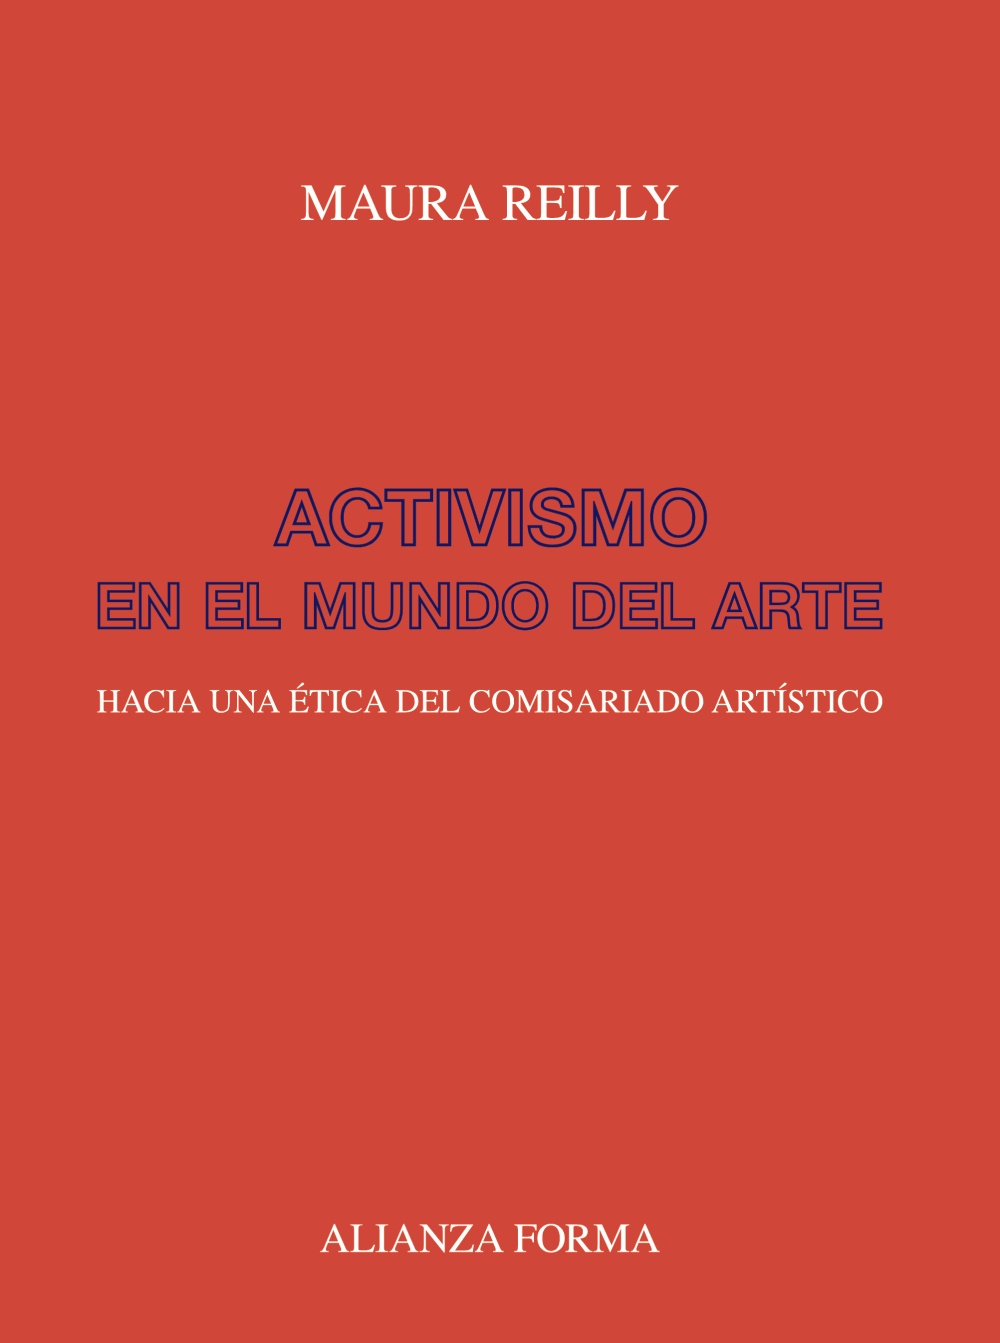 Maura Reilly, José Brownrigg-Gleeson Martínez, Lucy R. Lippard: Activismo en el mundo del arte (Paperback, 2019, Alianza Editorial)